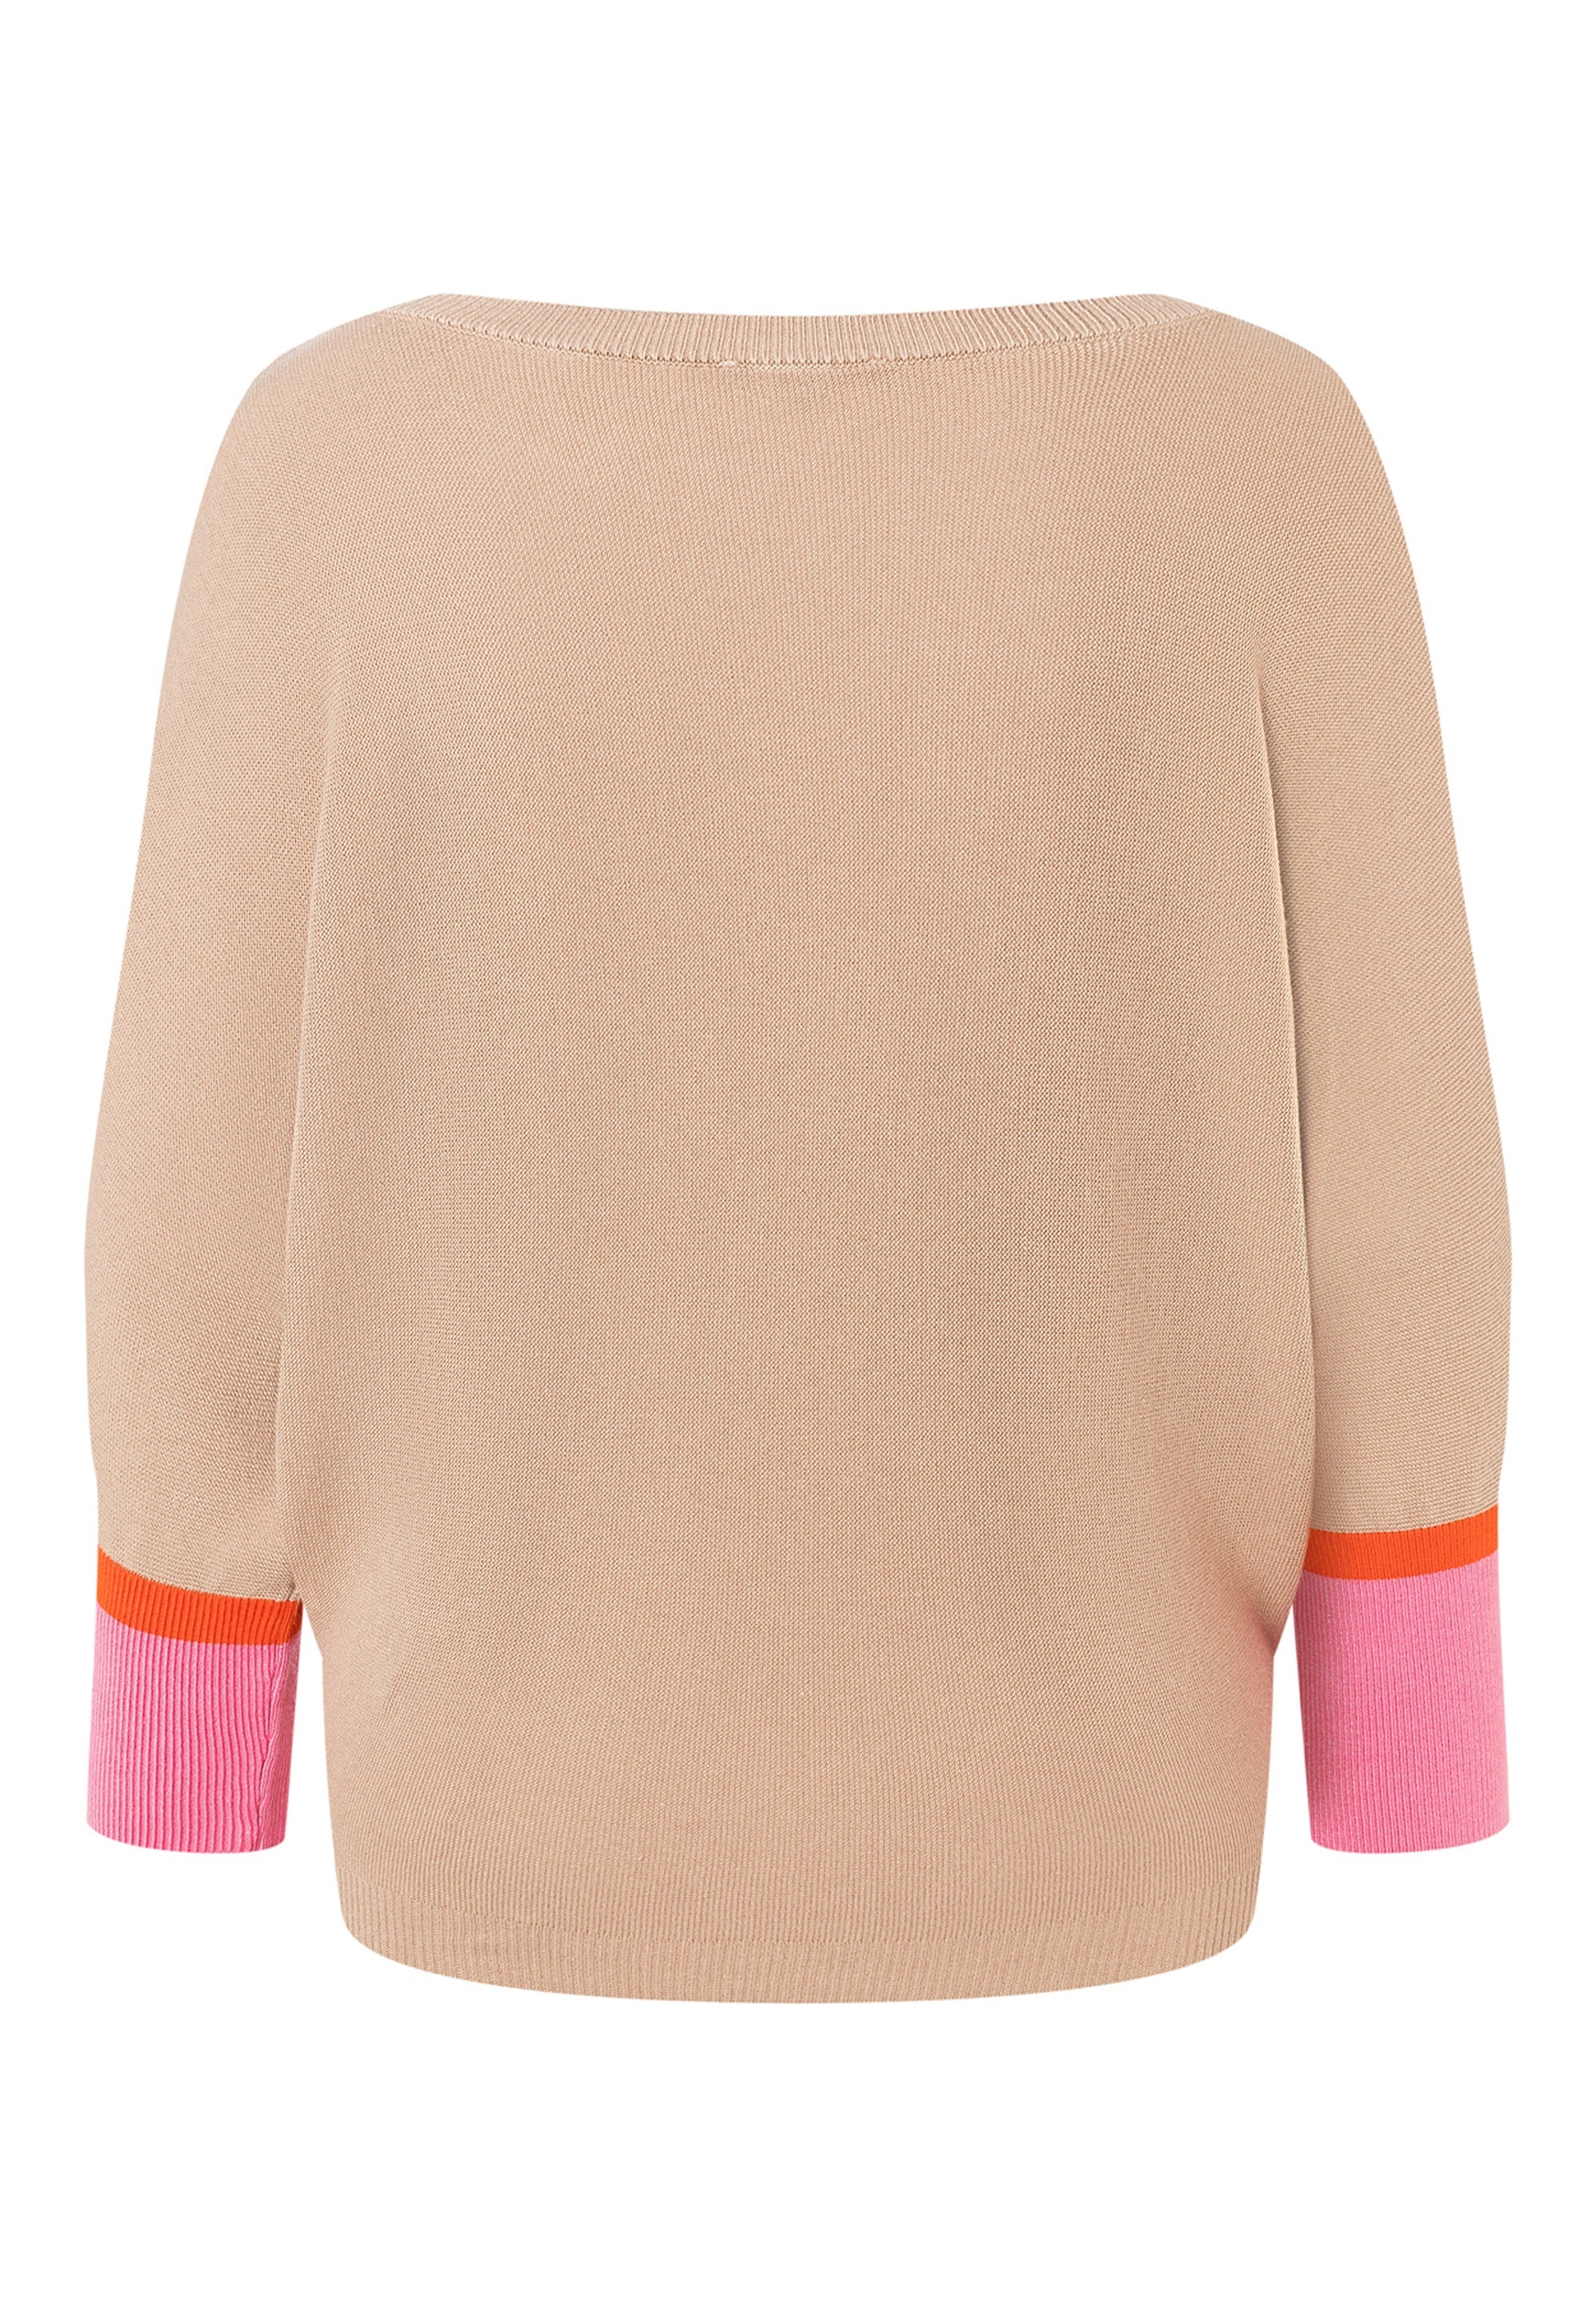 Sweater, Cashmere Beige - 03